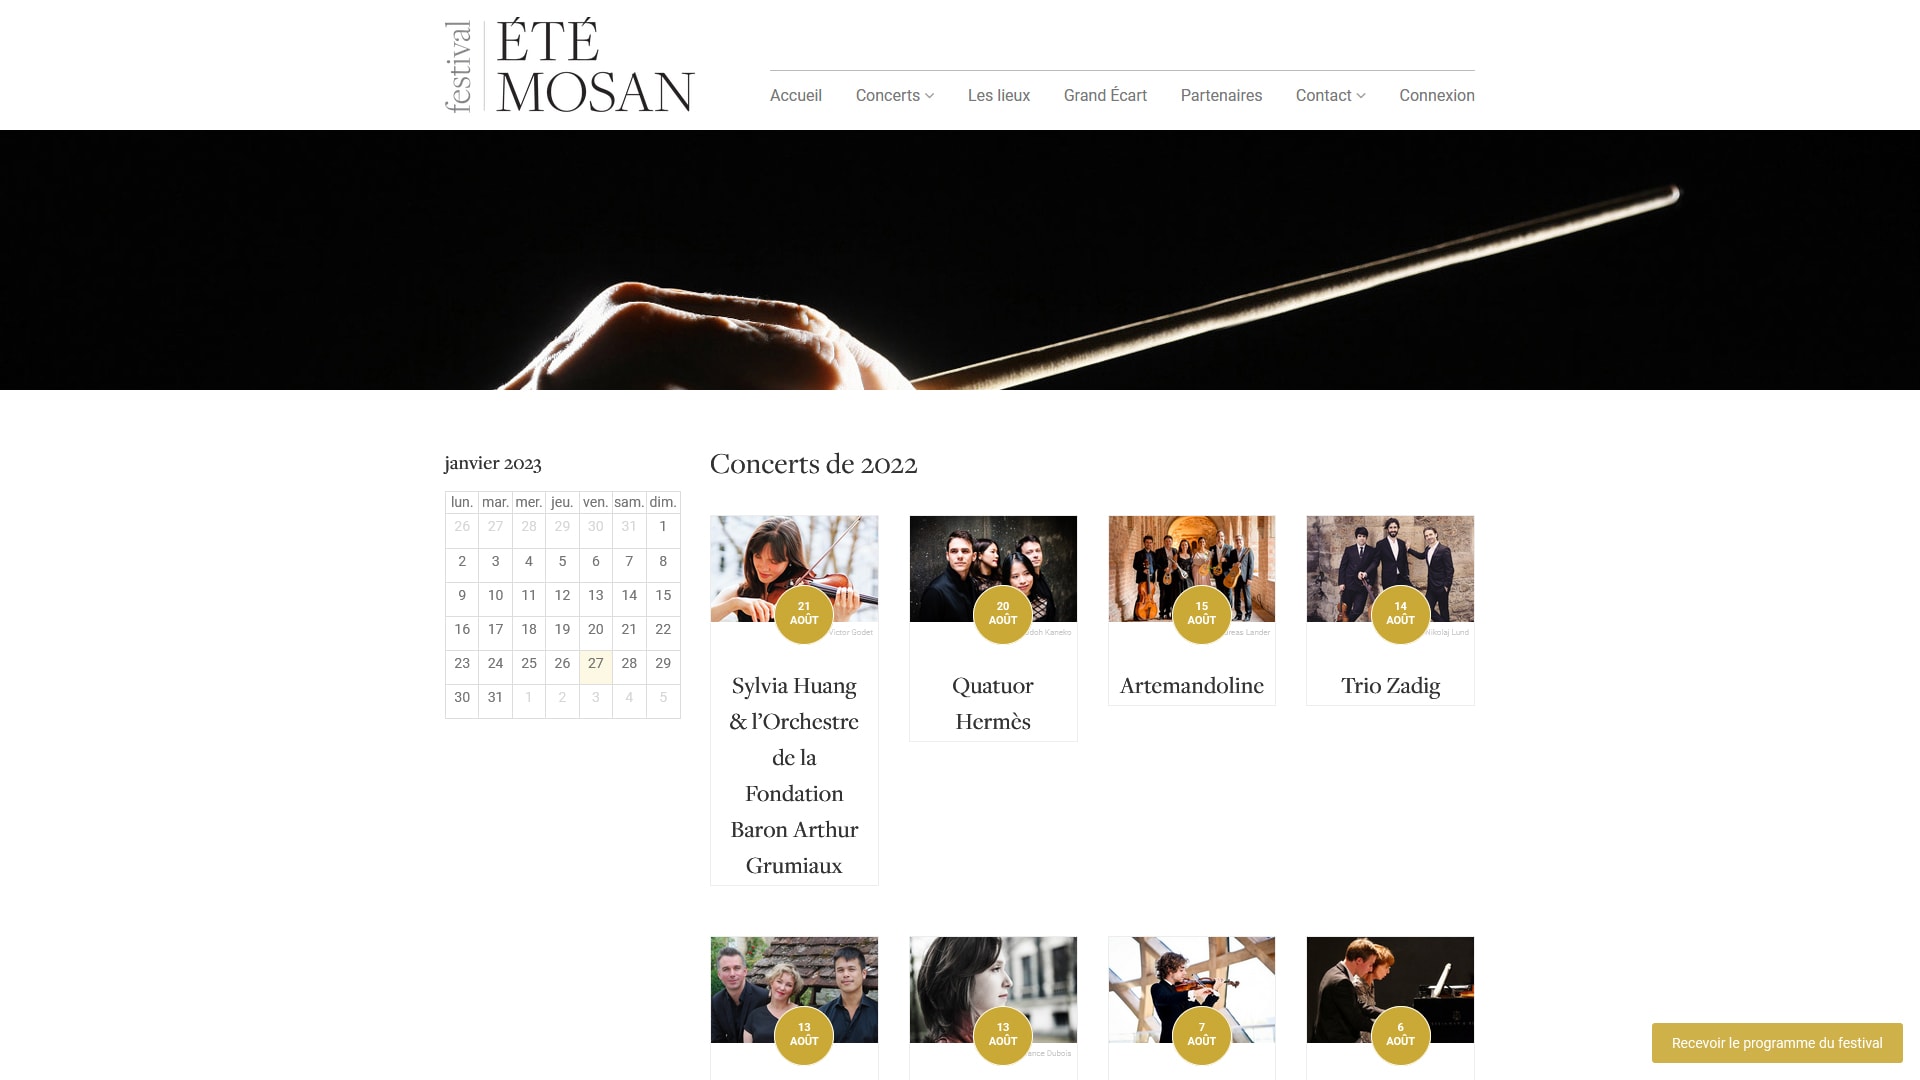 Festival de l'Eté Mosan Website